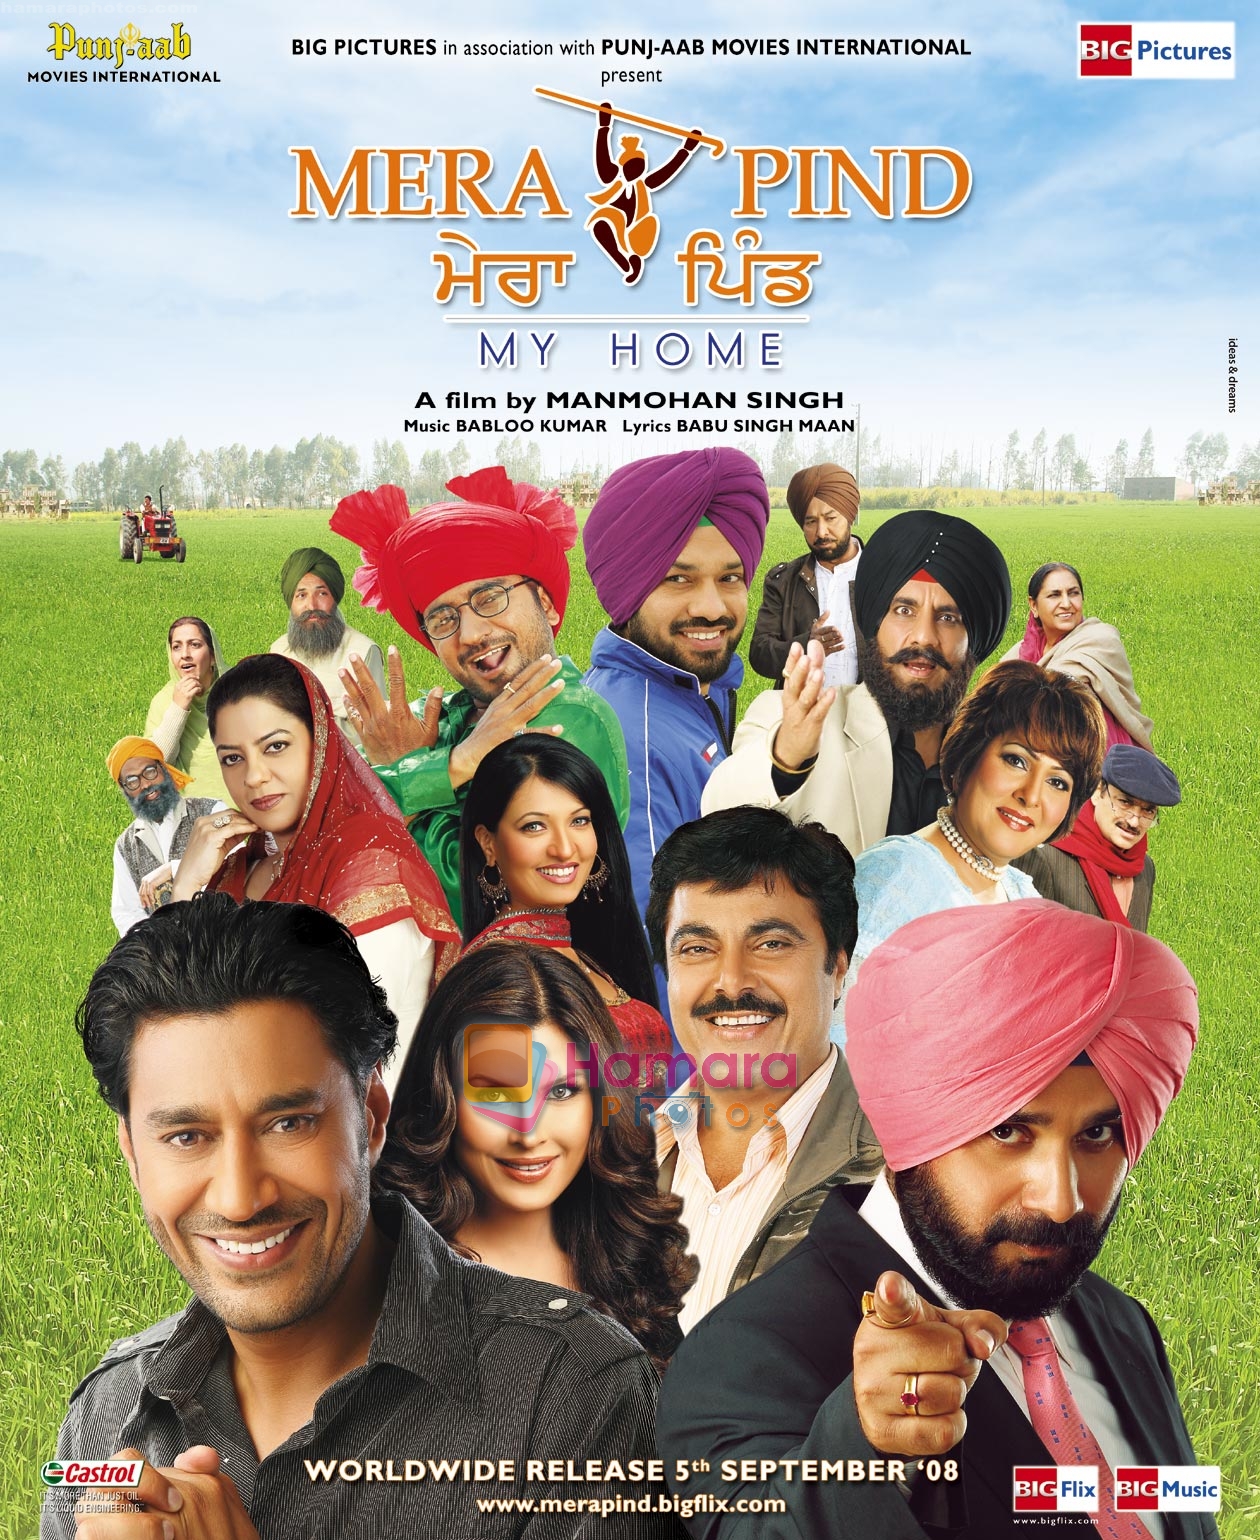 Navjot Singh Sidhu On the sets of Mera Pind Punjabi Movie 